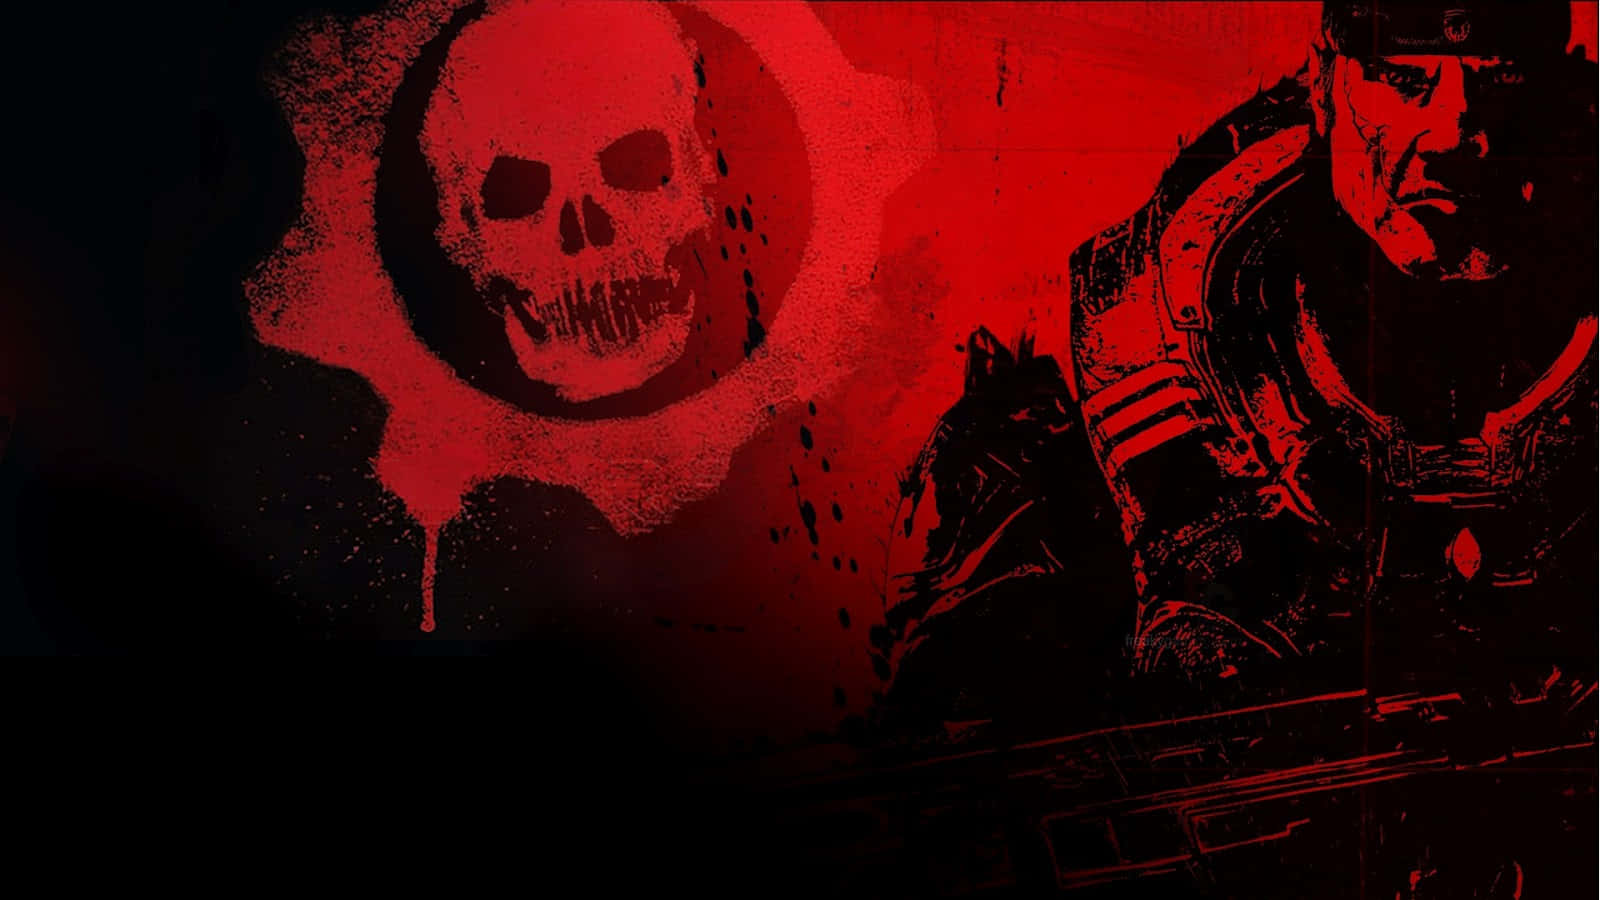 Kännaadrenalinkicken I Gears Of War 1. Wallpaper